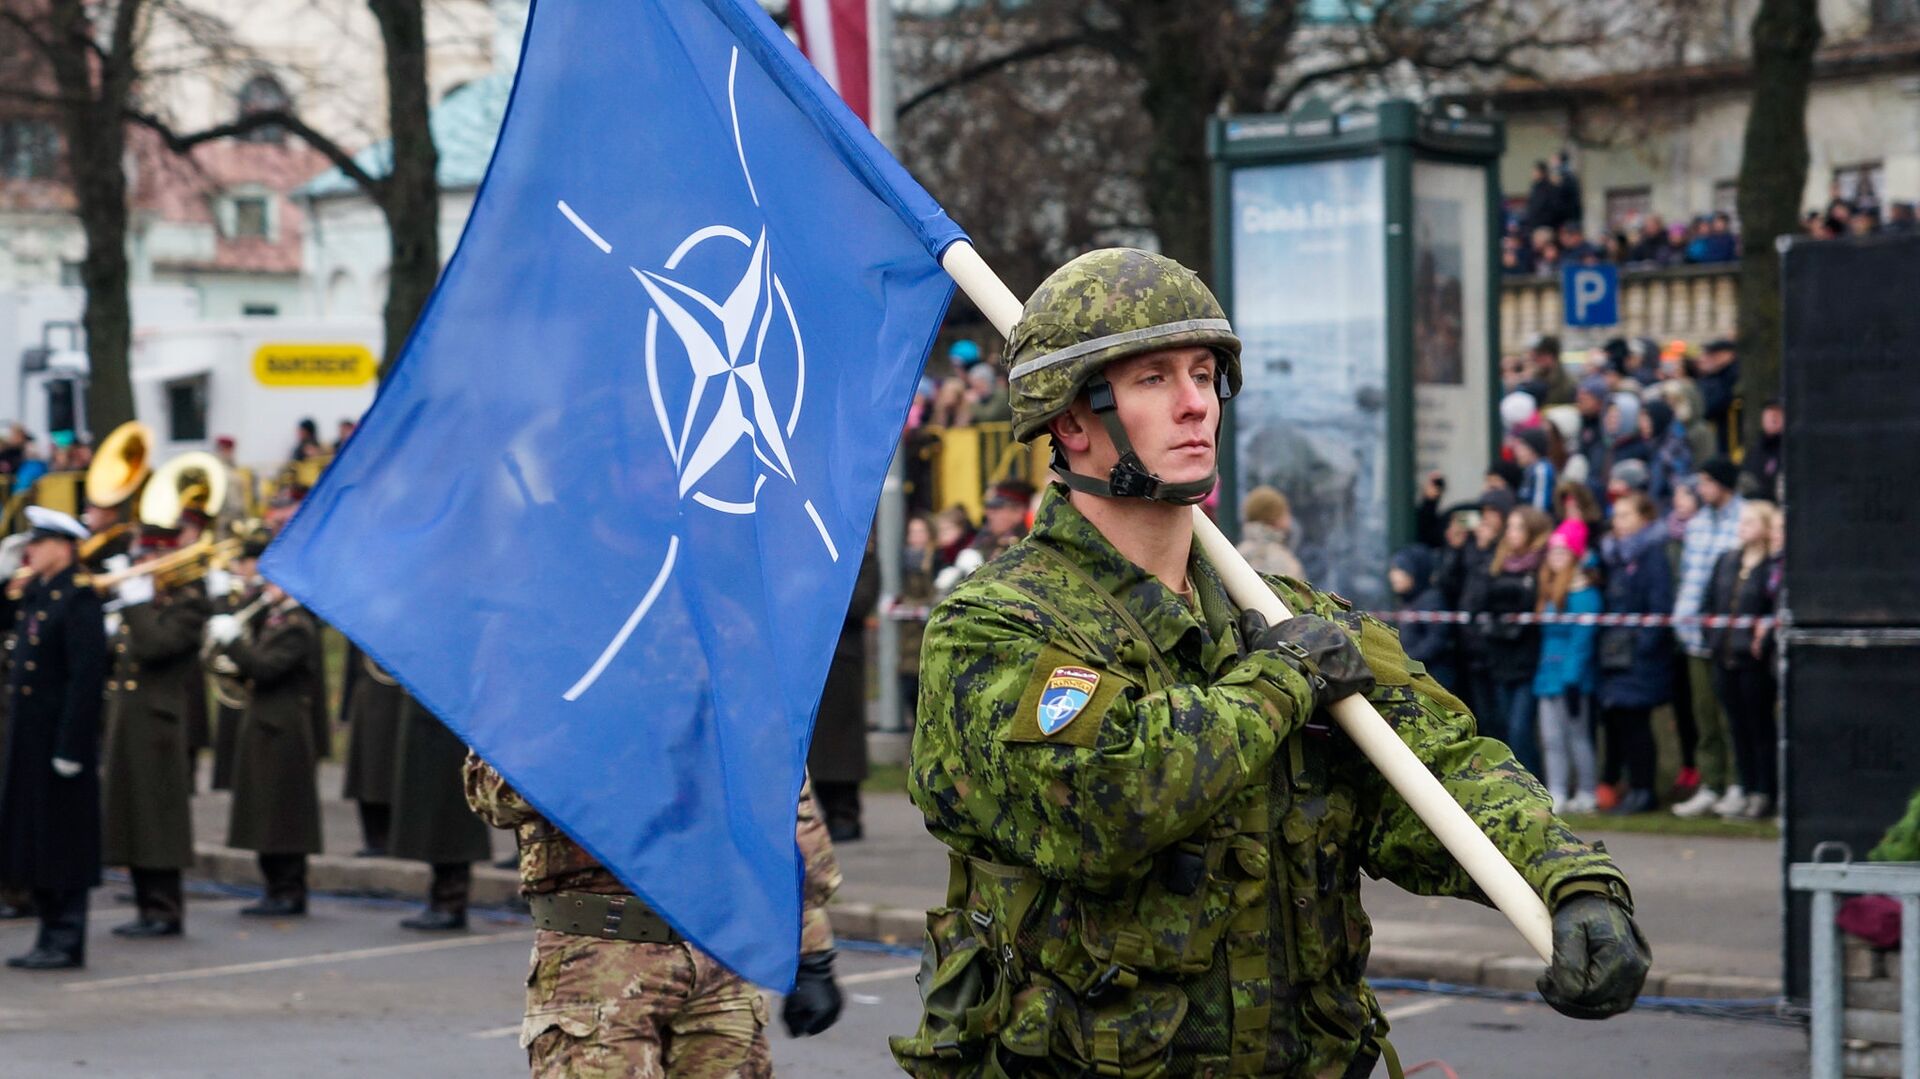 Военнослужащий Канады несет флаг НАТО на военном параде в Риге - Sputnik Латвия, 1920, 30.11.2021